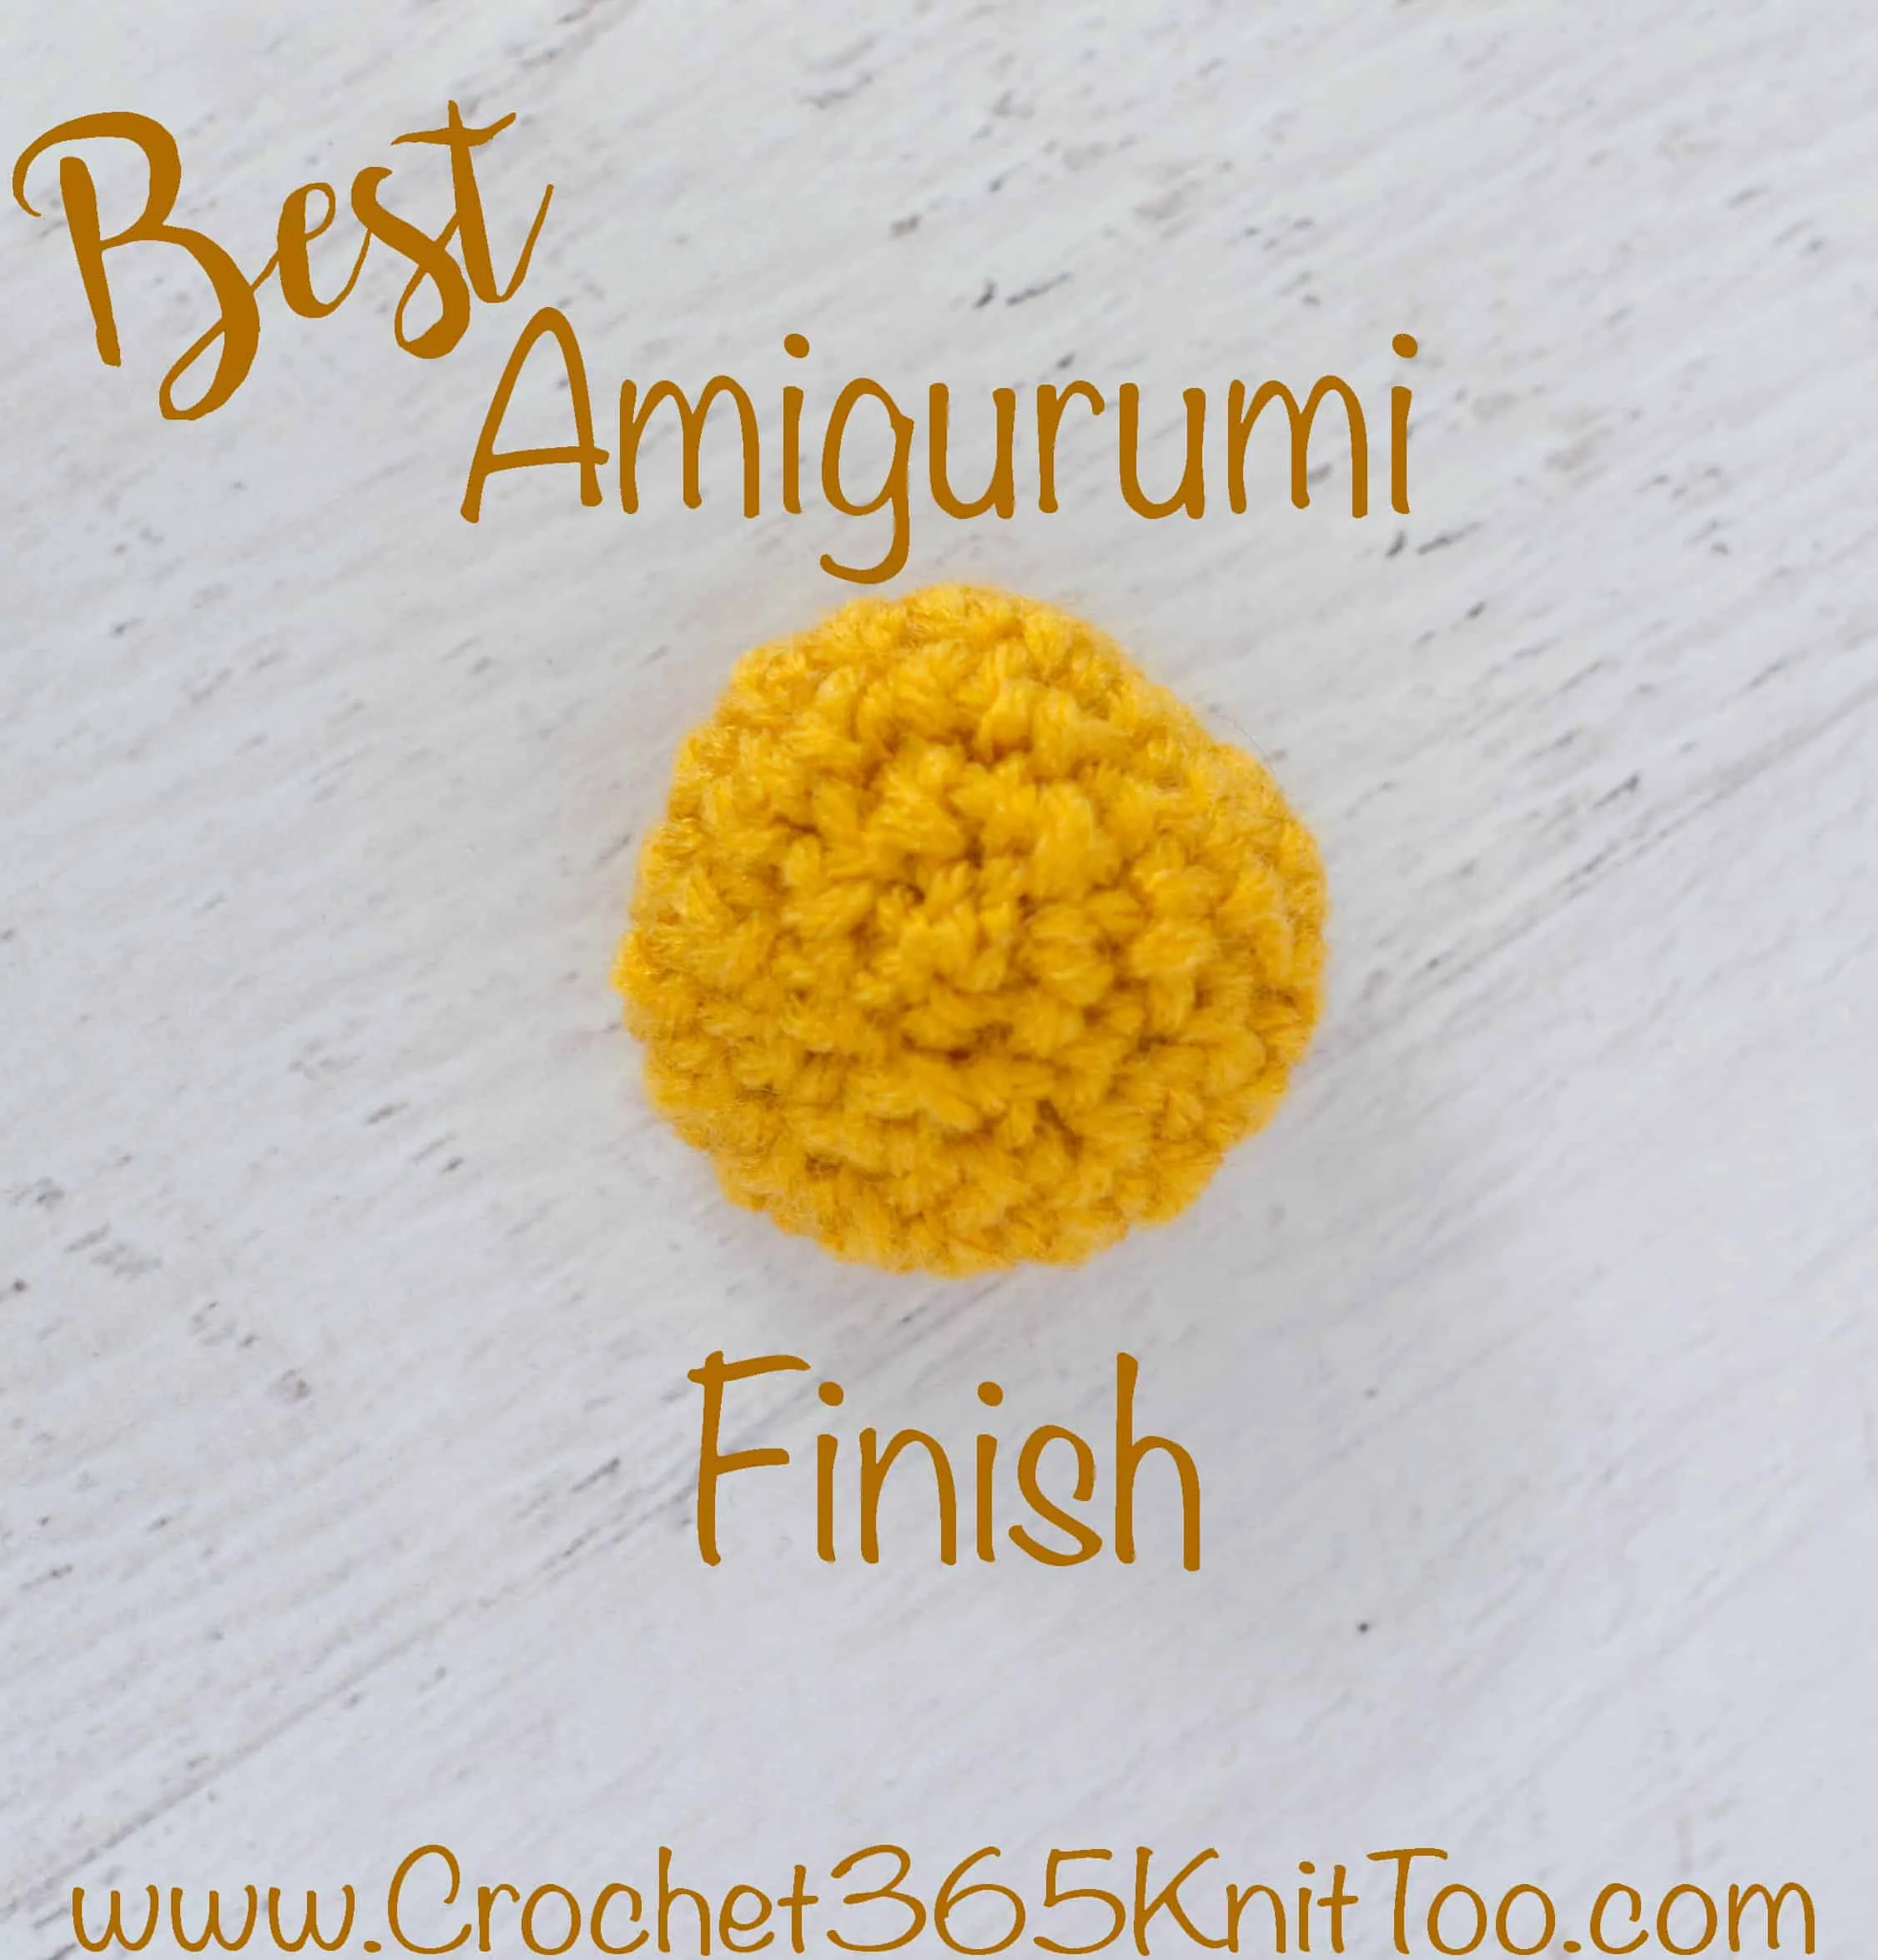 best amigurumi finish